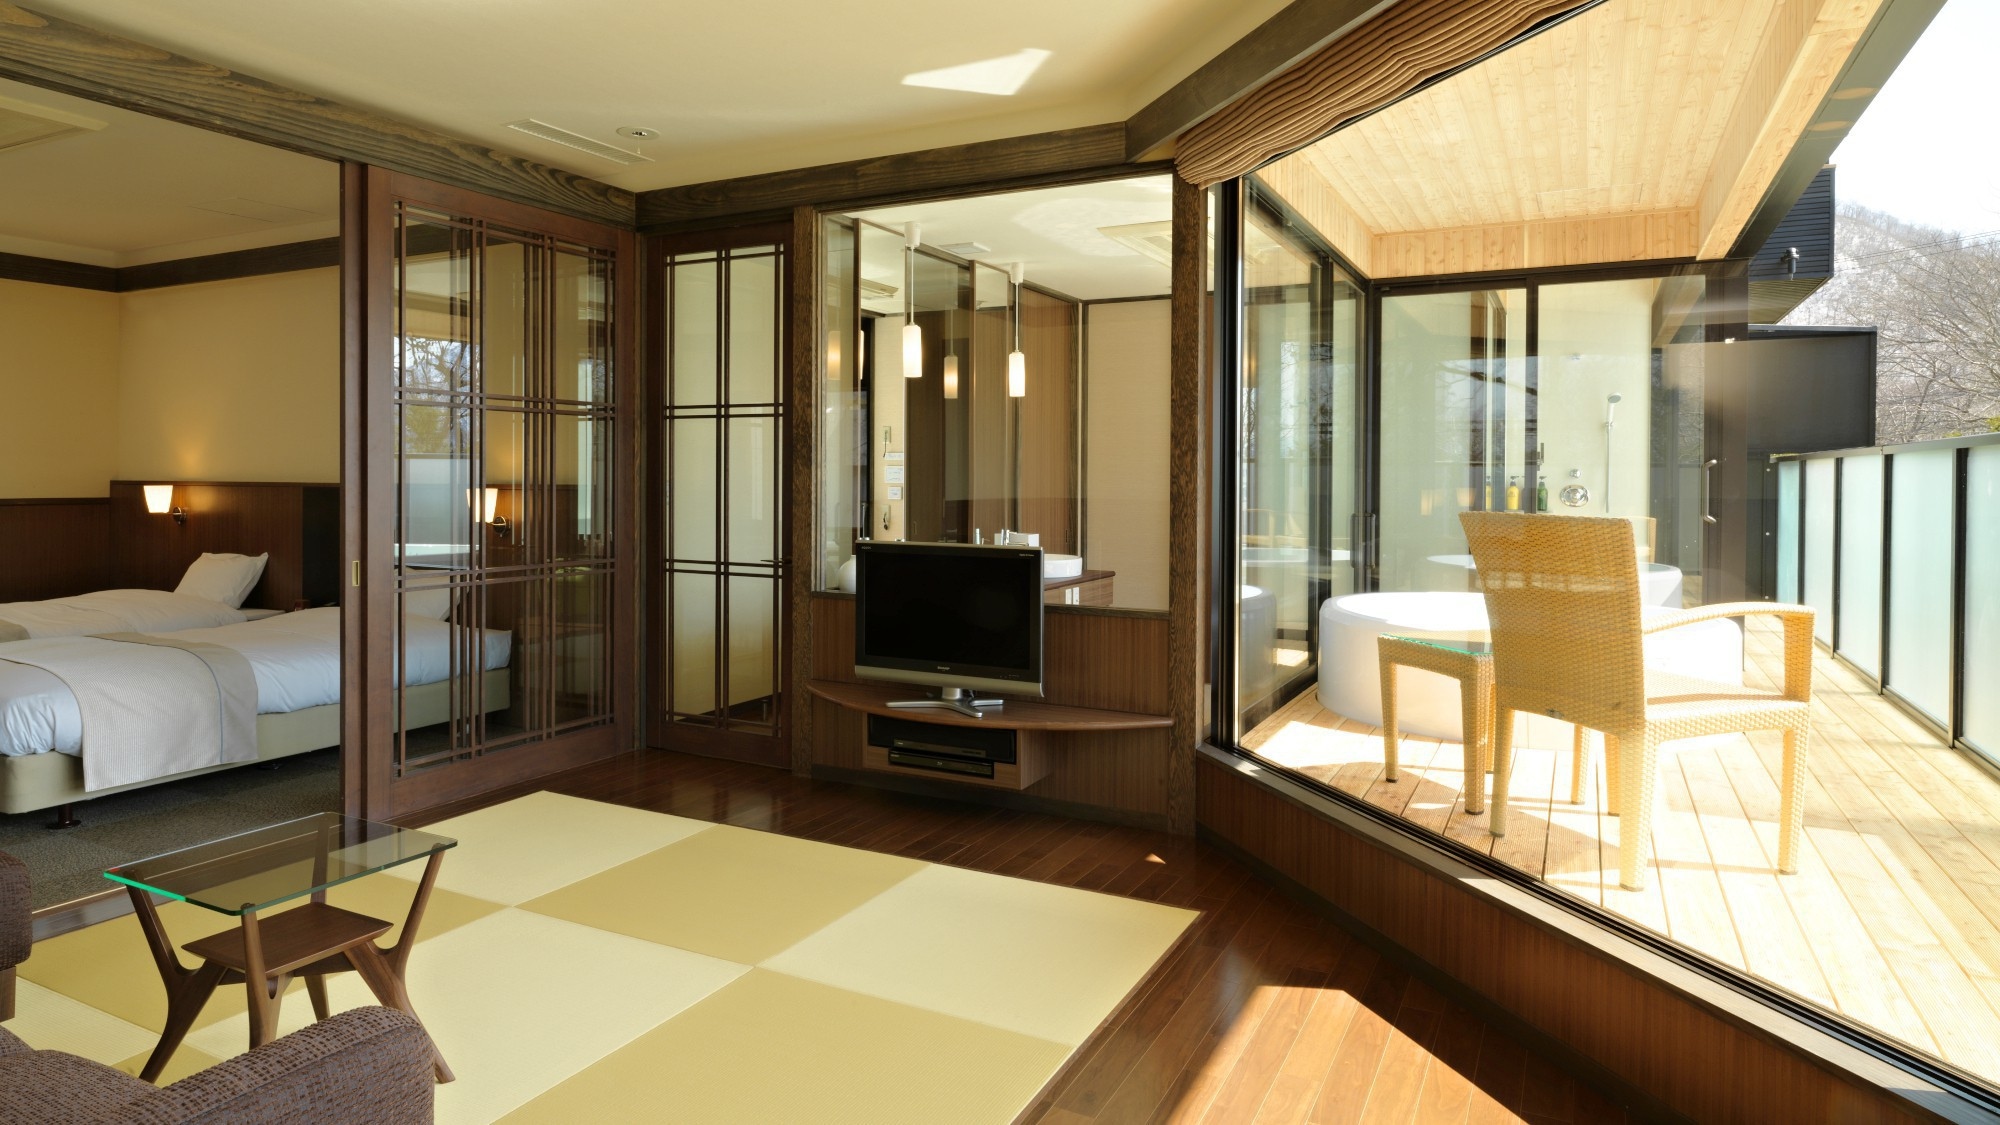 [Dengan kamar mandi observasi] Kamar Deluxe Jepang / Barat / Danau dapat dilihat dari jendela besar (contoh kamar tamu)